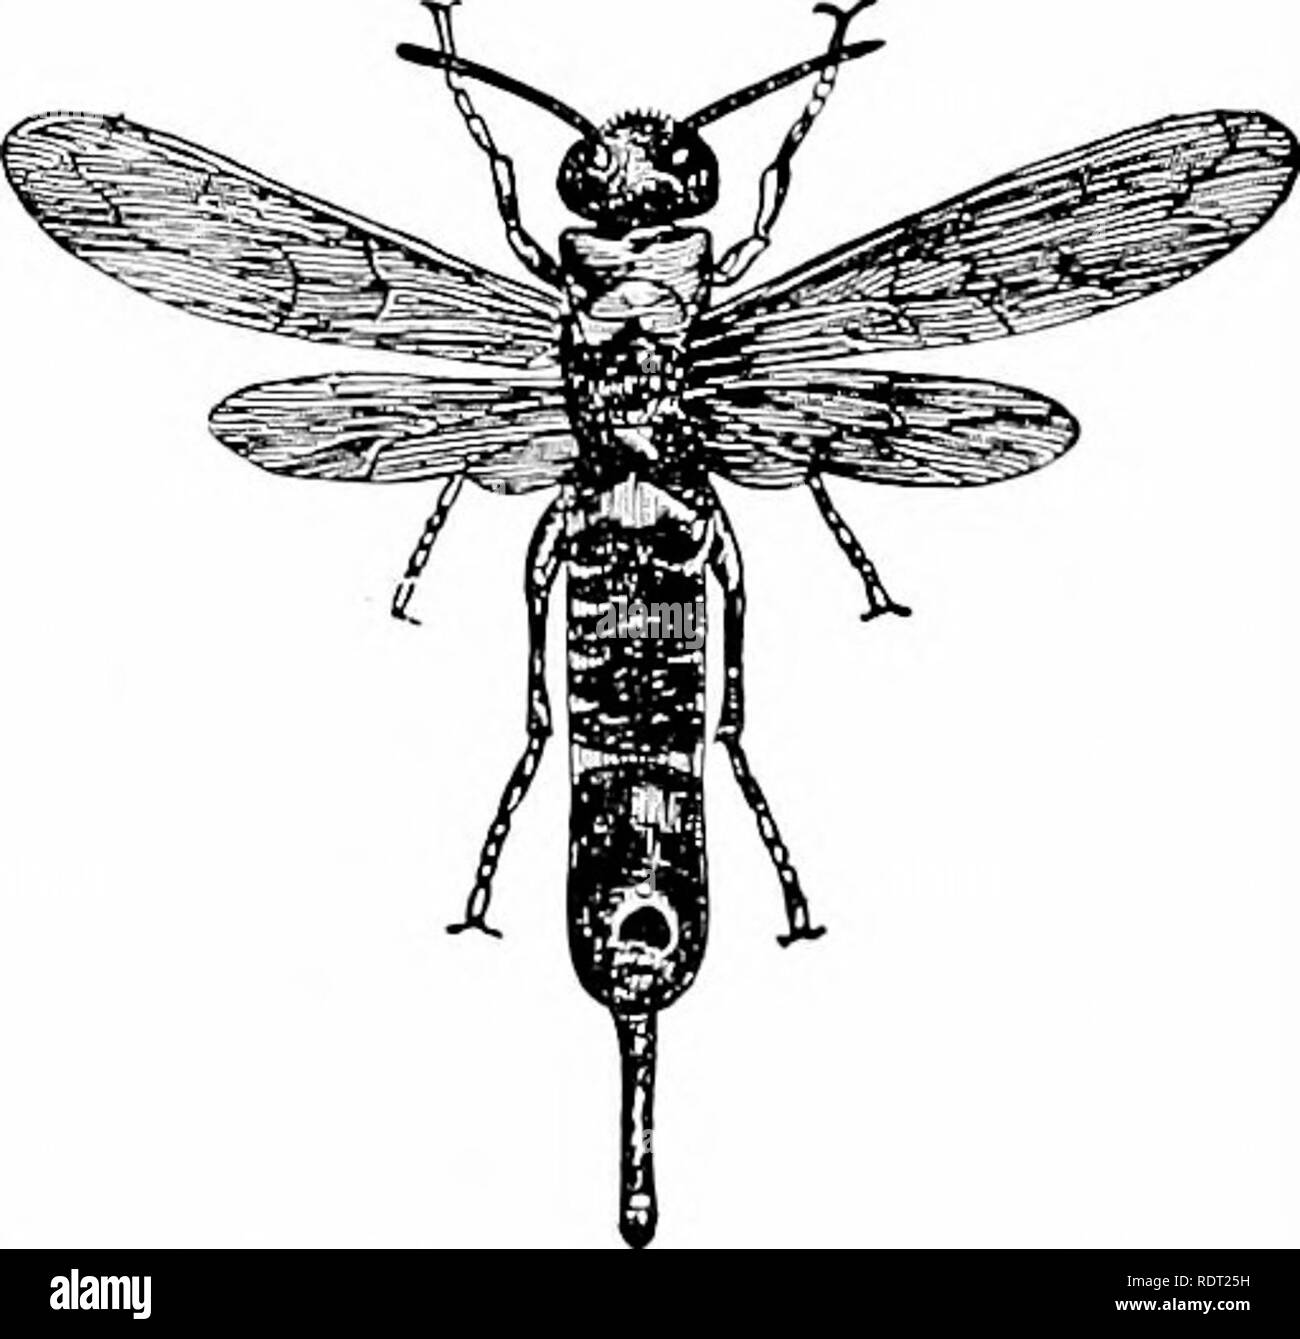 . Principes de l'zooÌ¤logie économique. Zoologie, économique. Les hyménoptères 175 mouches). La piqûre d'Hyménoptères, à raison de leur moyen de défense efficace-, sont souvent mimiclced (Fig. 132, p. 160)- âthe bourdon les abeilles par le faucon-papillons, les frelons par deux papillons à ailes clair du genre Stsia, l'abeille par le drone volée (Eristalis), la Guêpe commune par un Anglais eridus {Clytus beetle), et l'hornet b&gt ;' un Hemiptera nicaraguayenne. Vu-mouches et "Horntails."Le âAmong sont les Hyménoptères ennuyeux vu-fiies, horntails, et gall-mouches. La scie-mouches ont une large tête et thorax, avec une large adhésion à Banque D'Images